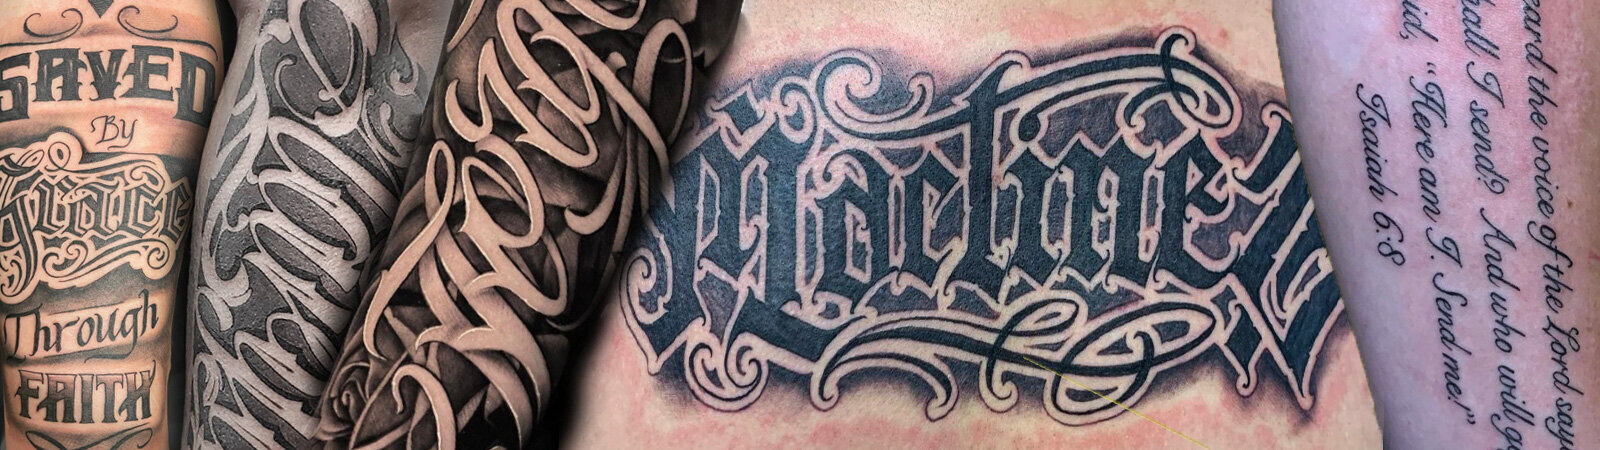 Tattoo uploaded by KTREW Tattoo • Script Thigh/Leg Tattoo by Kirstie @  KTREW Tattoo • Birmingham, UK 🇬🇧 #letteringtattoo #lettering #tattoos  #scriptwork #lineworktattoo #finelinetattoo • Tattoodo